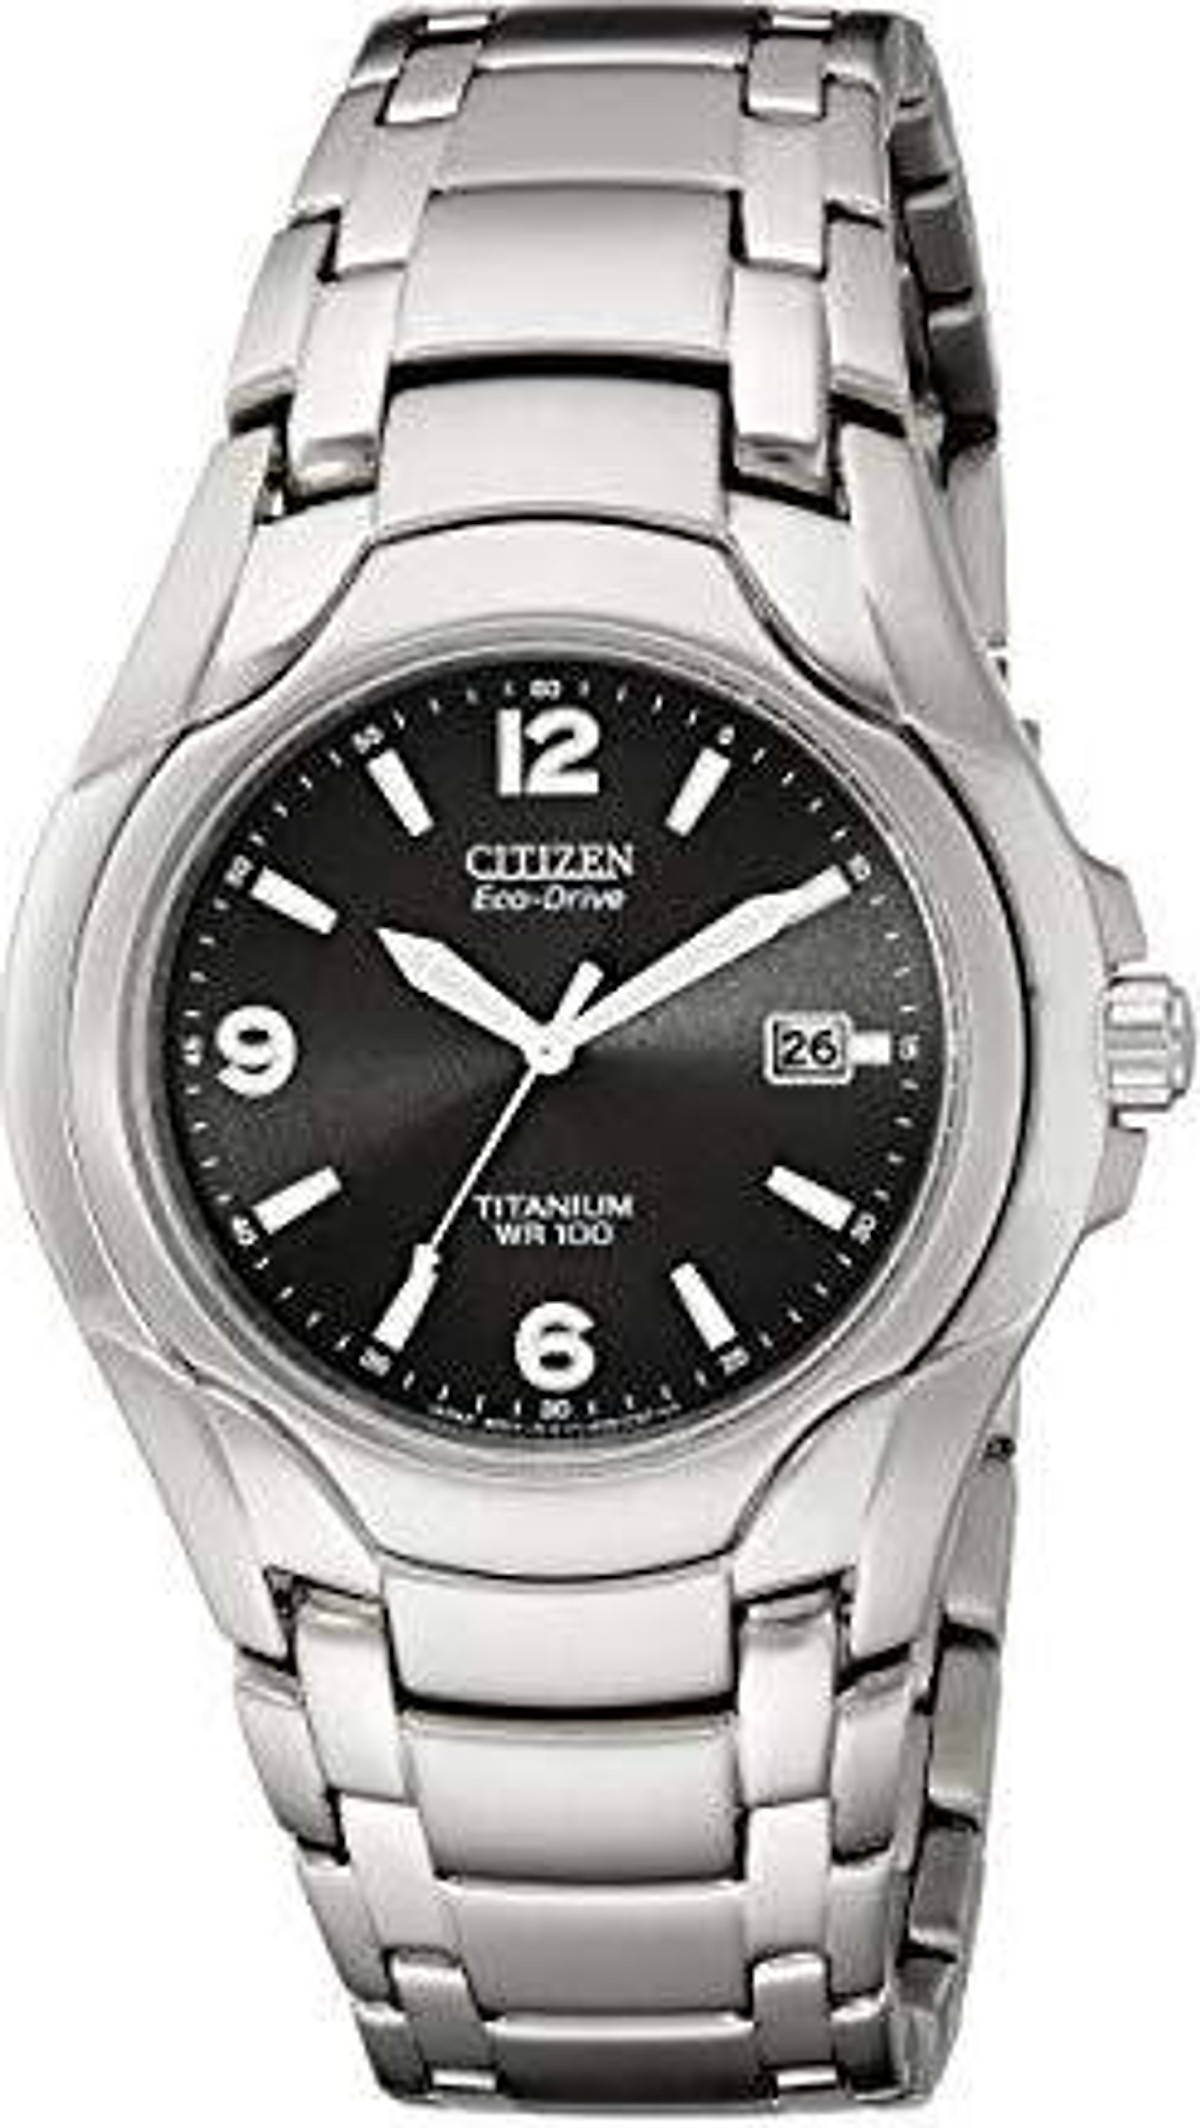 Mua Citizen Men's Eco-Drive Titanium Watch with Date, BM6060-57F